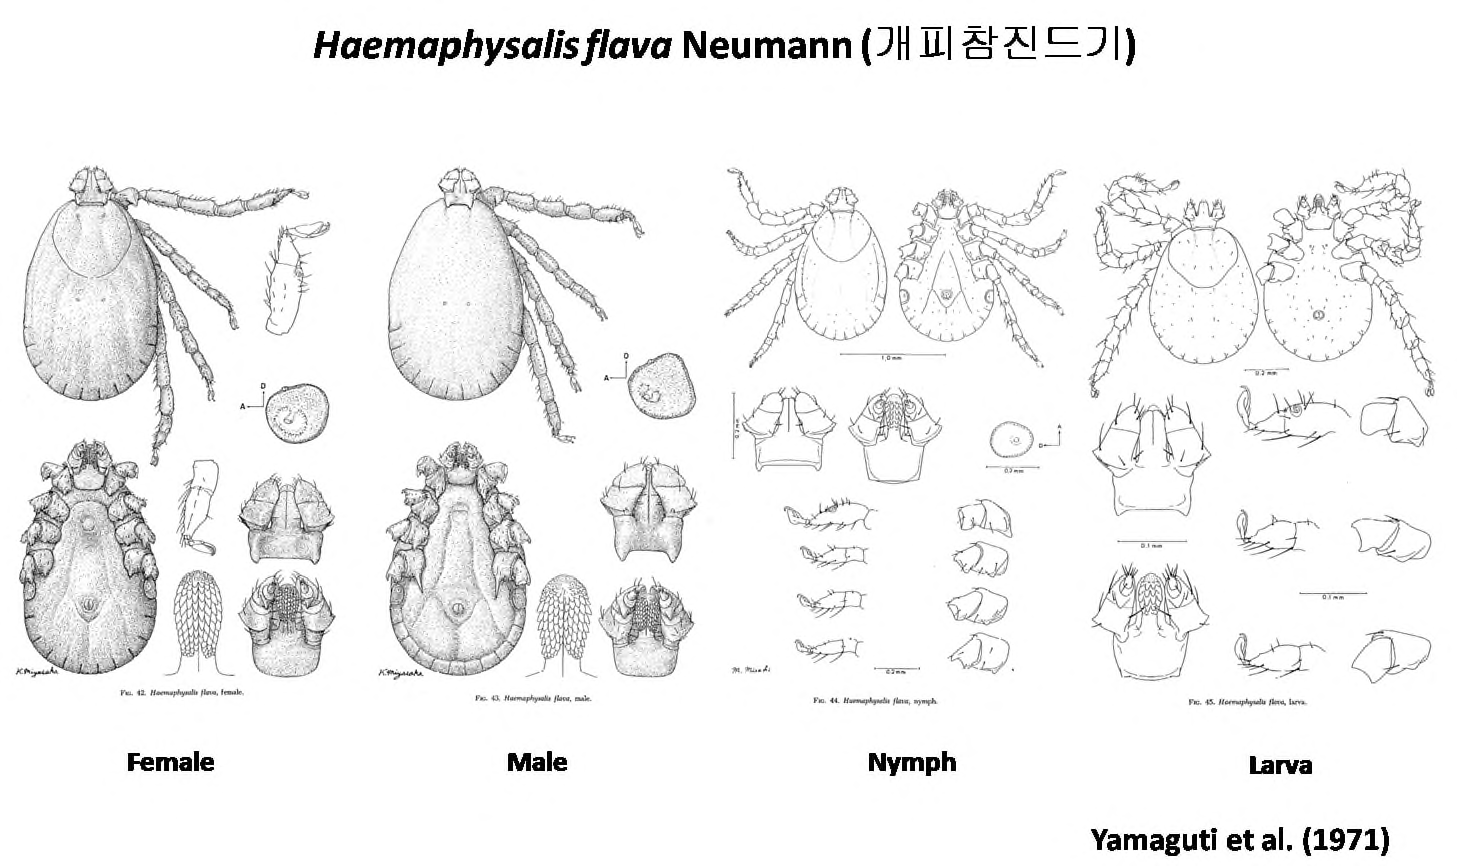 개피참진드기(Haemaphysalis flava)의 형태학적 특징